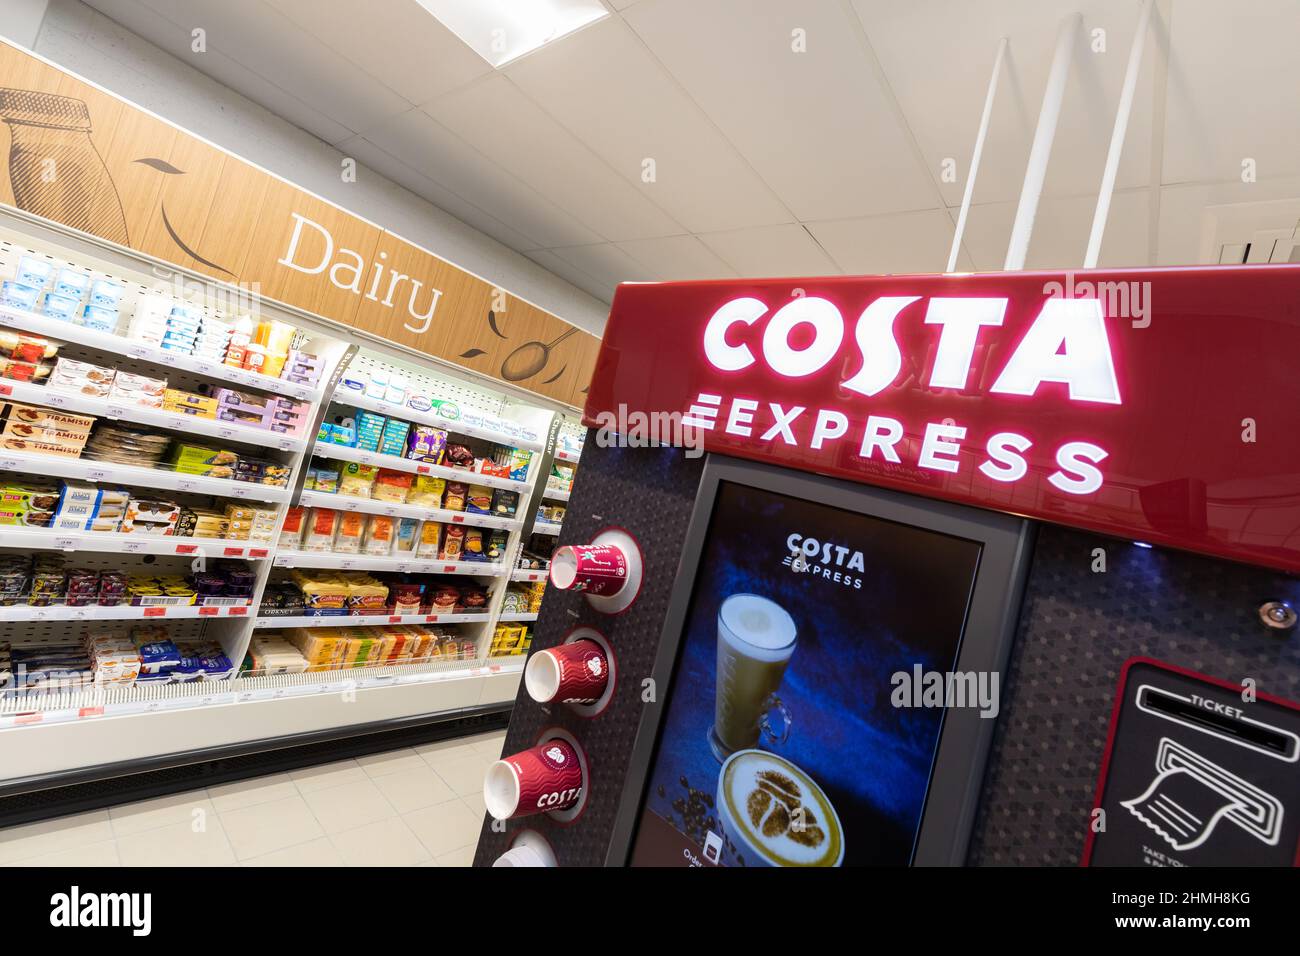 Dentro de una tienda local de Sainsbury en el Reino Unido, mostrando una máquina de café Costa beide los productos lácteos Foto de stock